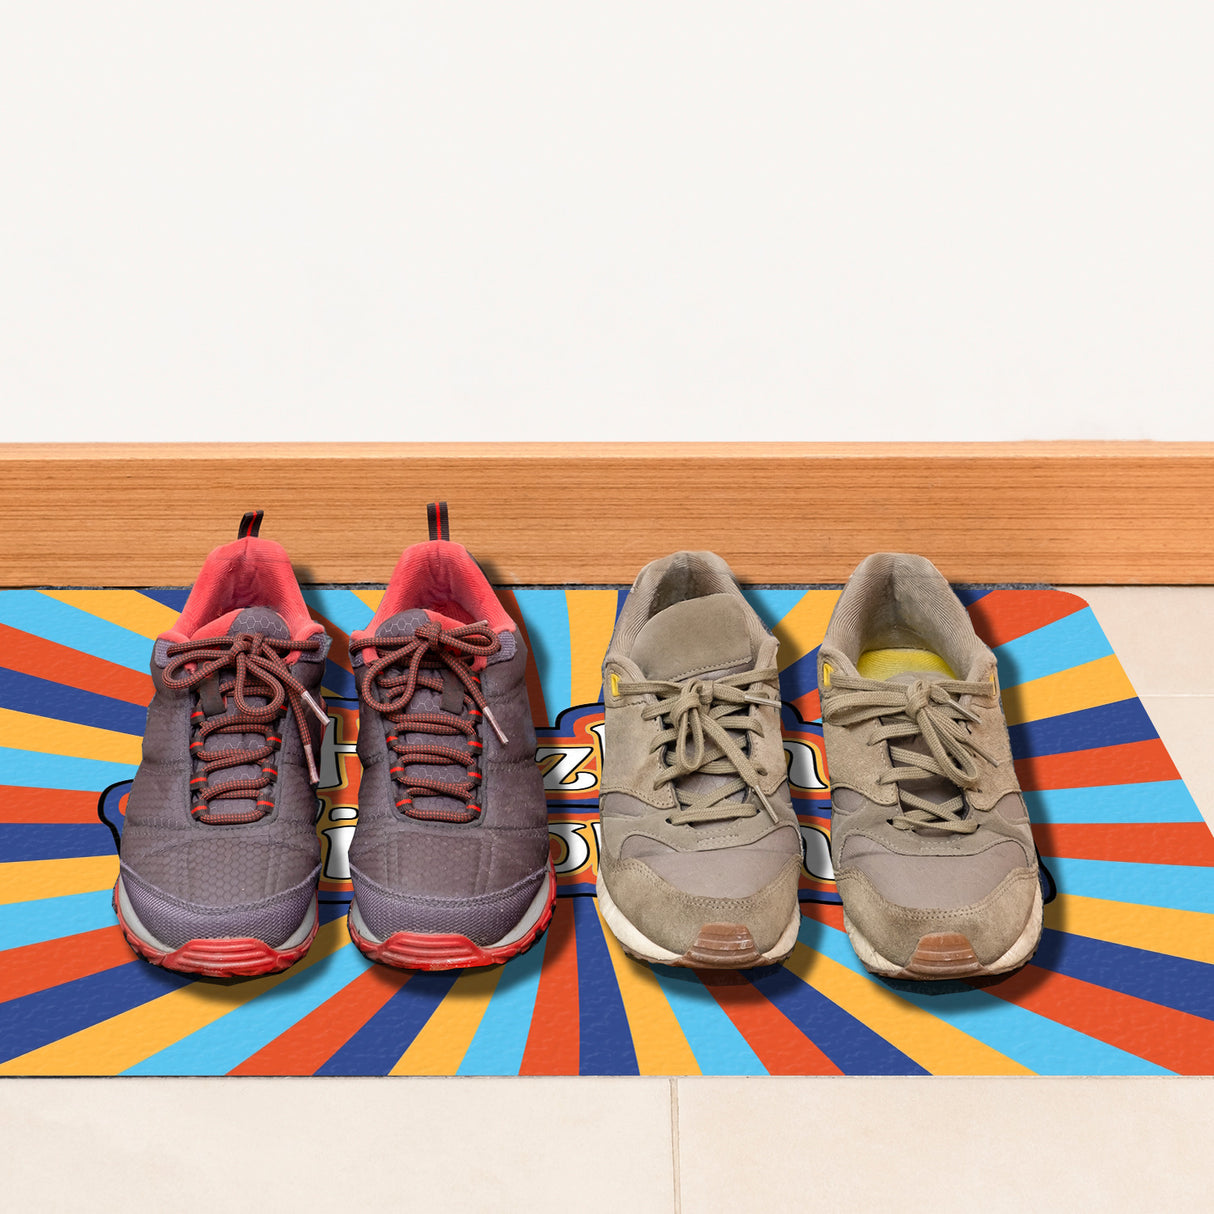 Farbenfrohe Herzlich Willkommen Fußmatte in 35x50 cm ohne Rand in bunten Sommerfarben